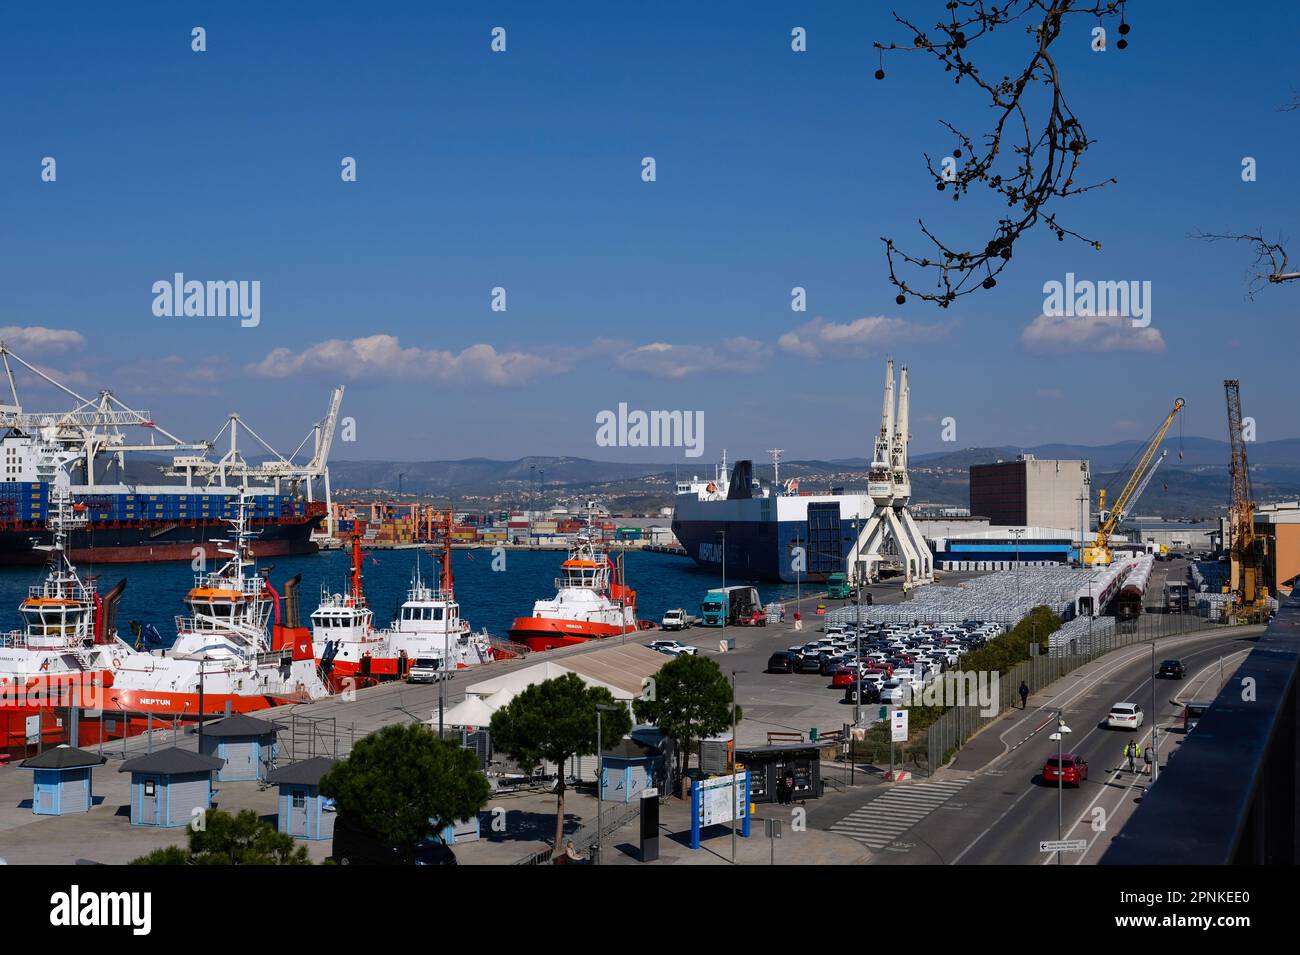 Il porto di Capodistria (Luka Capodistria) in Slovenia, è l'unico porto marittimo sloveno, sposta due terzi del traffico marittimo nazionale Foto Stock